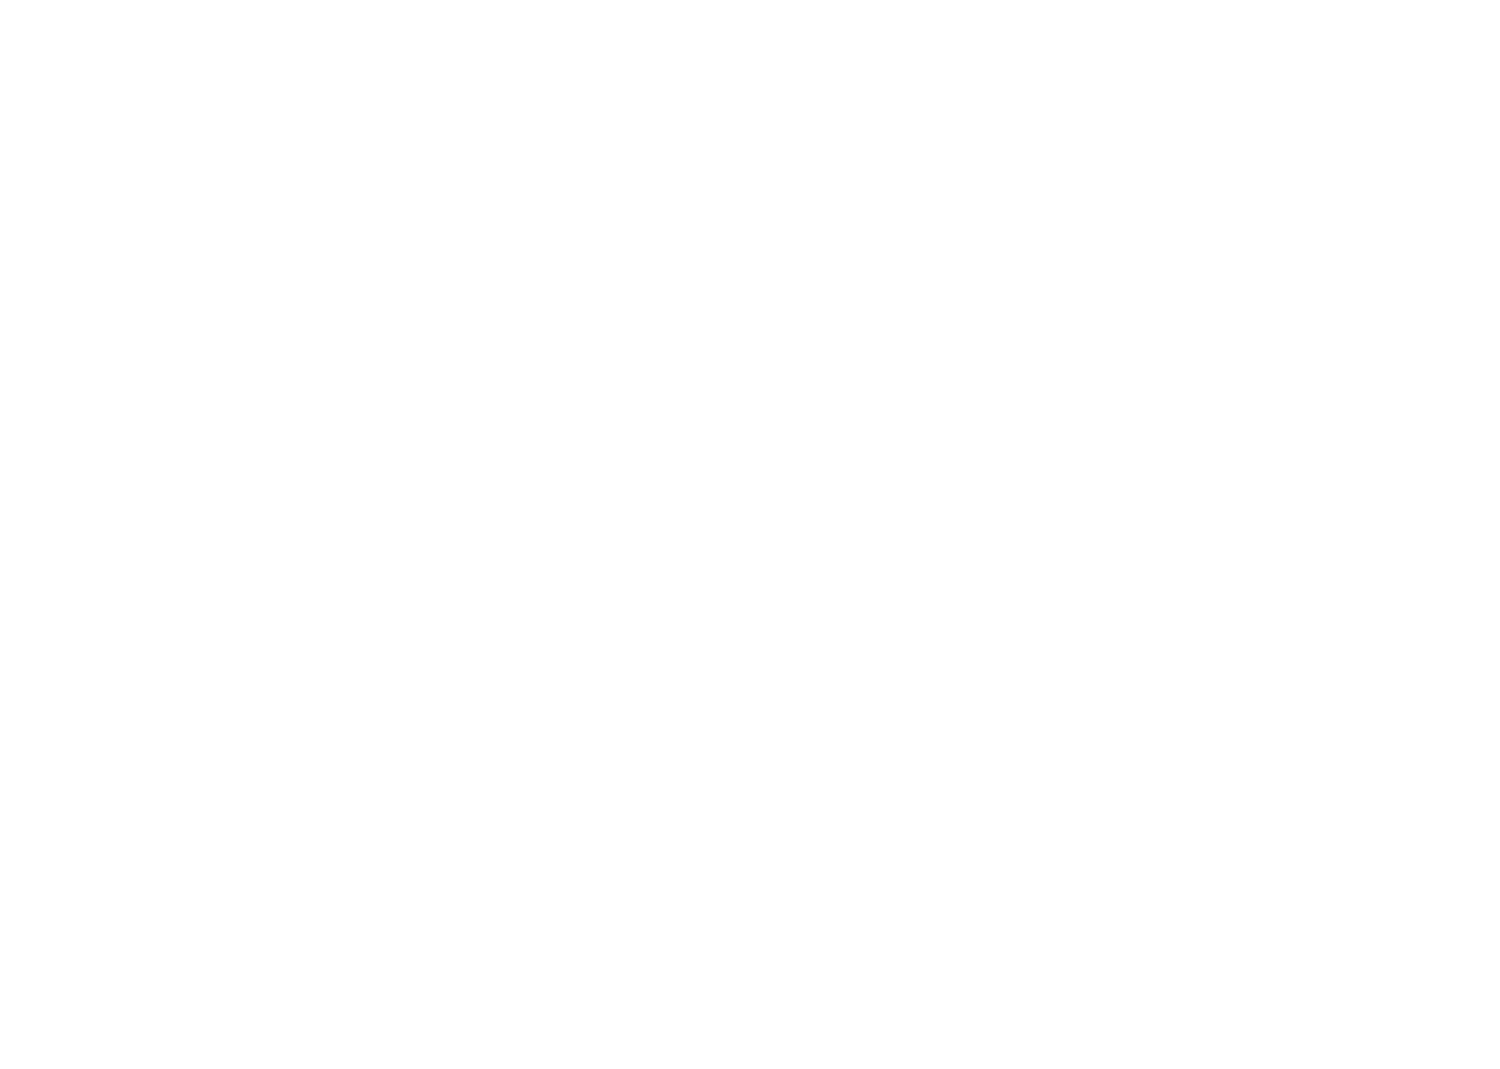 The Frozen Ark